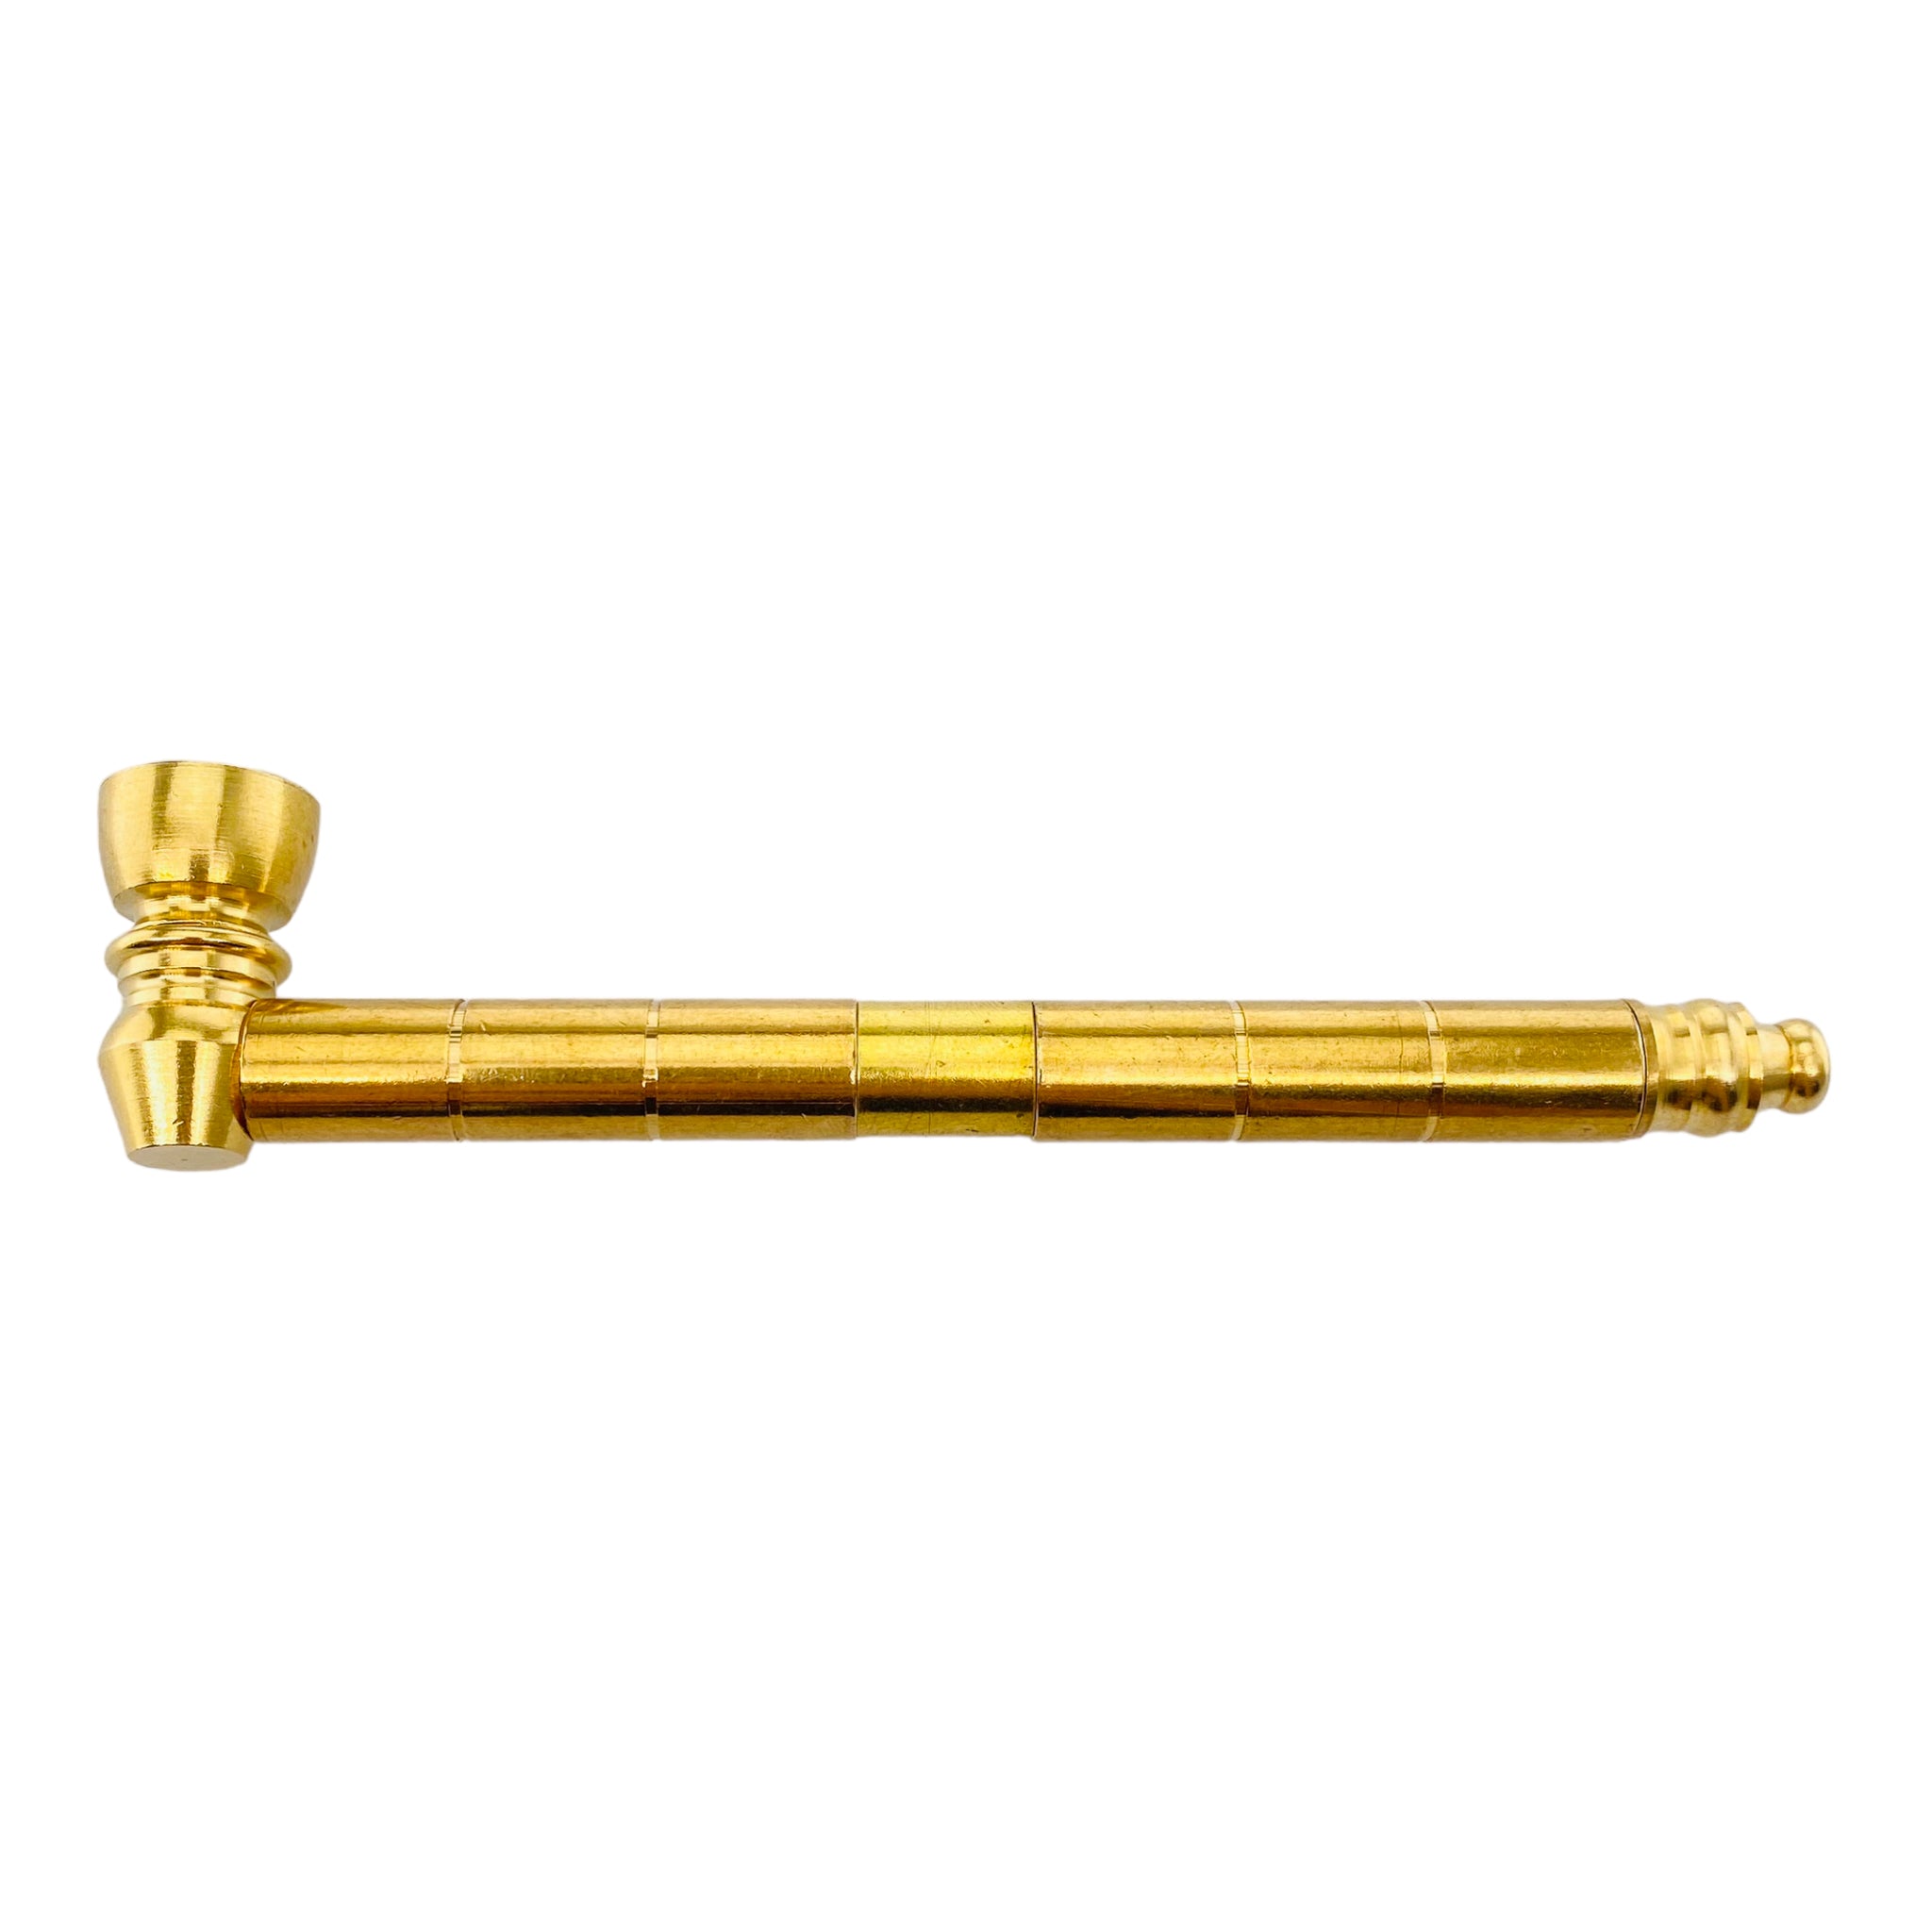 Metal Hand Pipes - Brass Long Stem Aluminum Metal Pipe